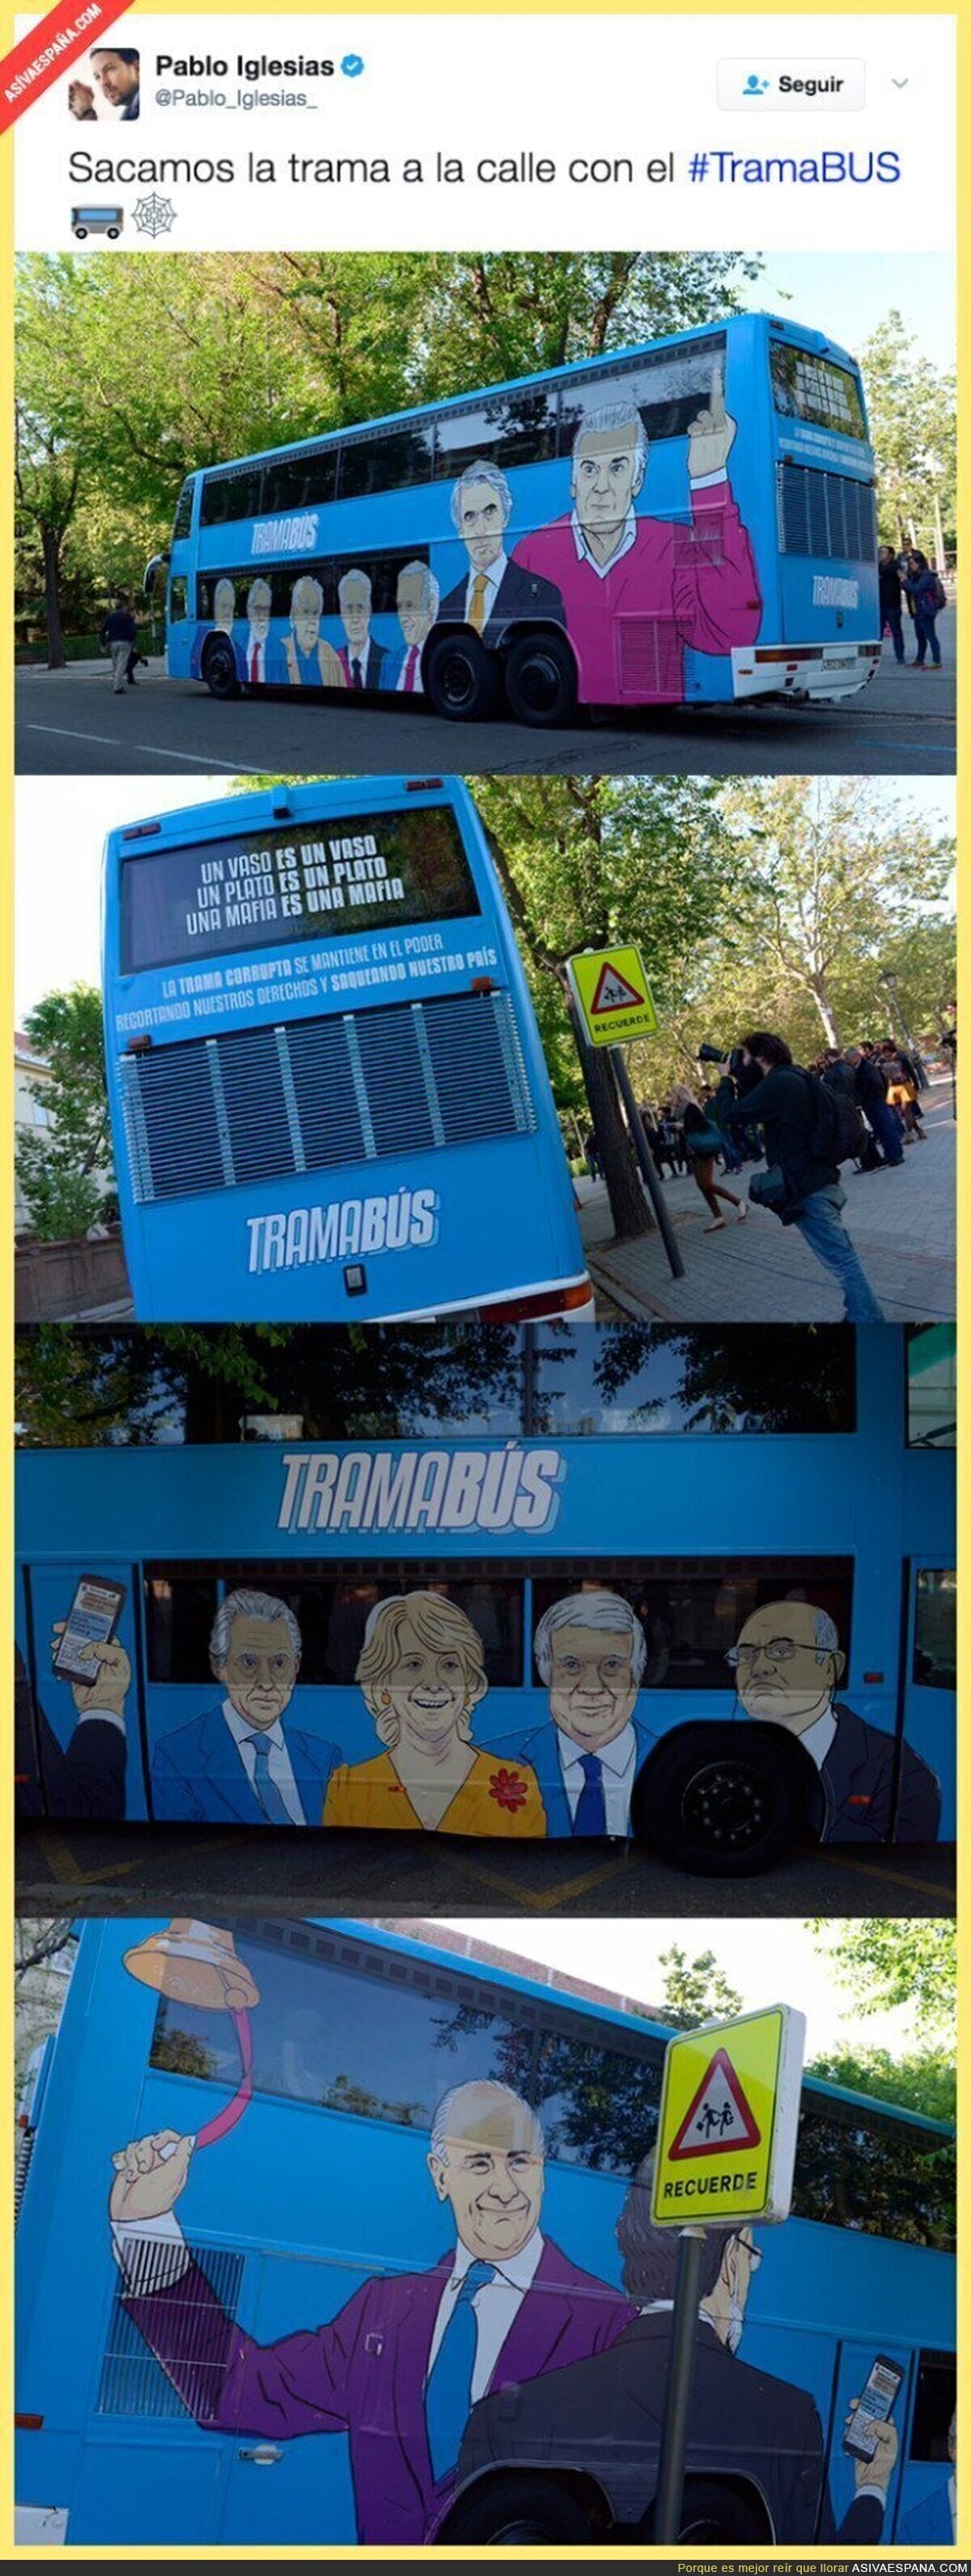 Pablo Iglesias saca a las calles el Trama Bus con estos dibujos